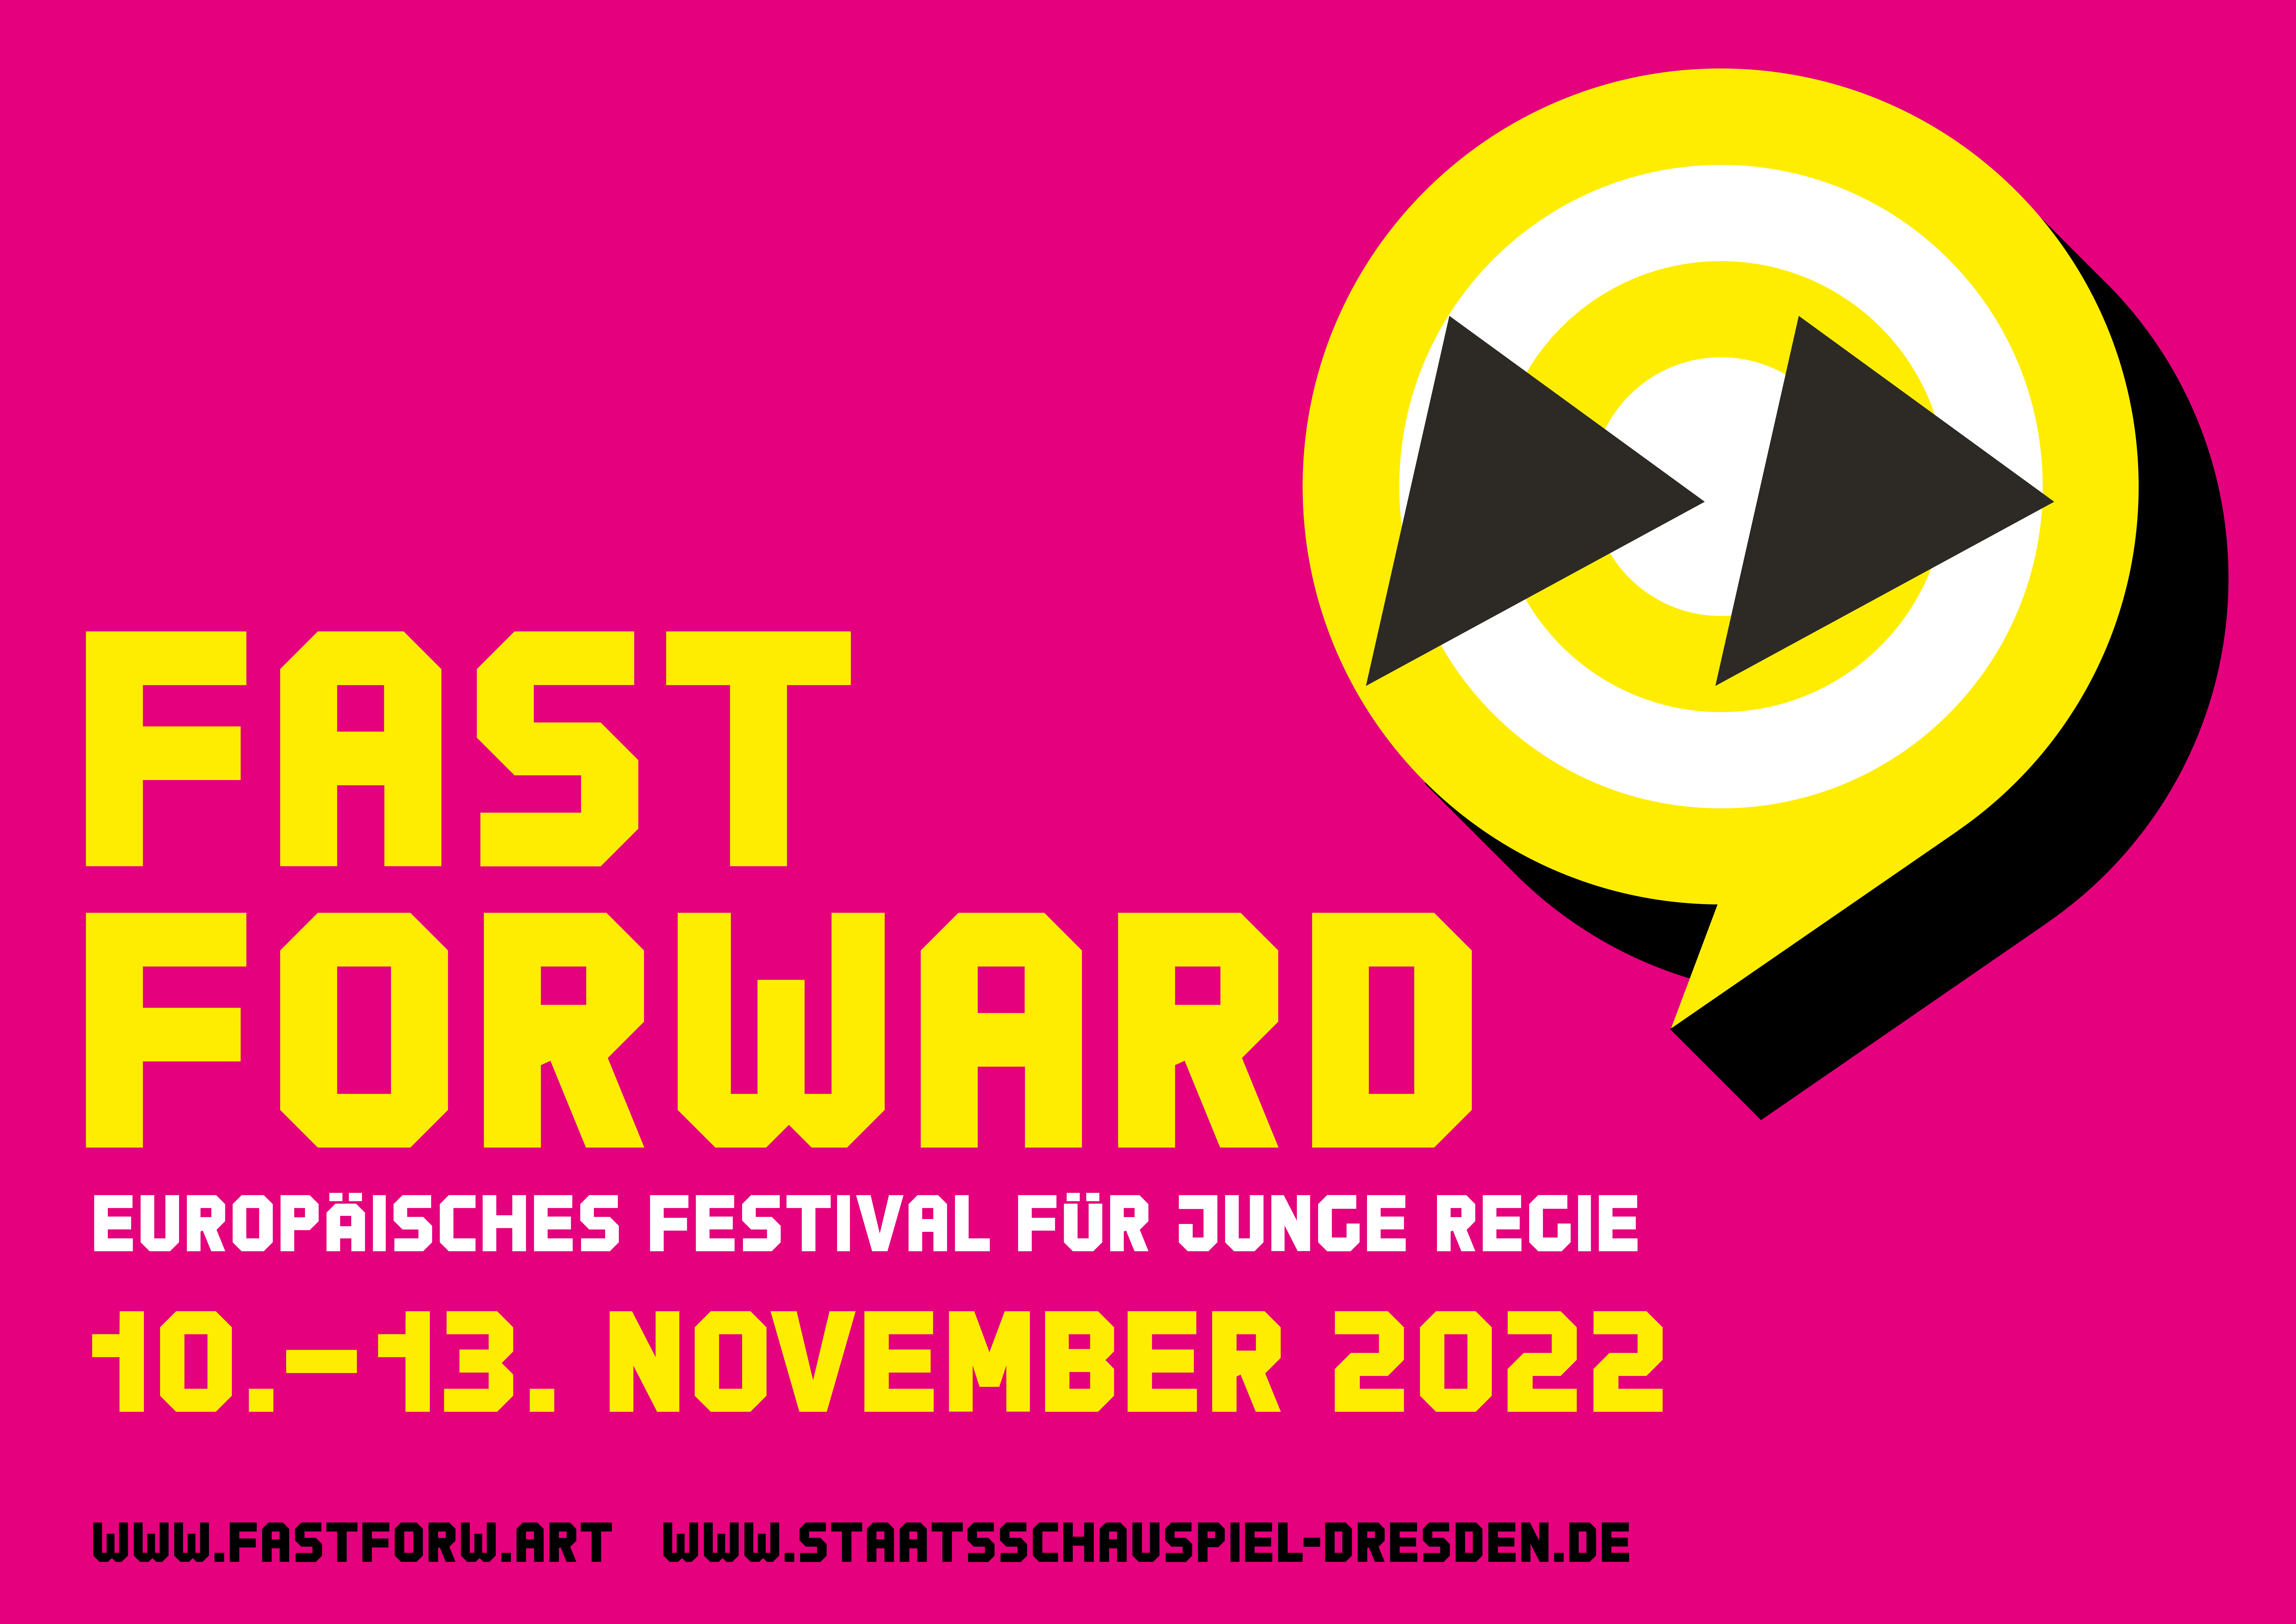 FAST FORWARD Europäisches Festival für junge Regie